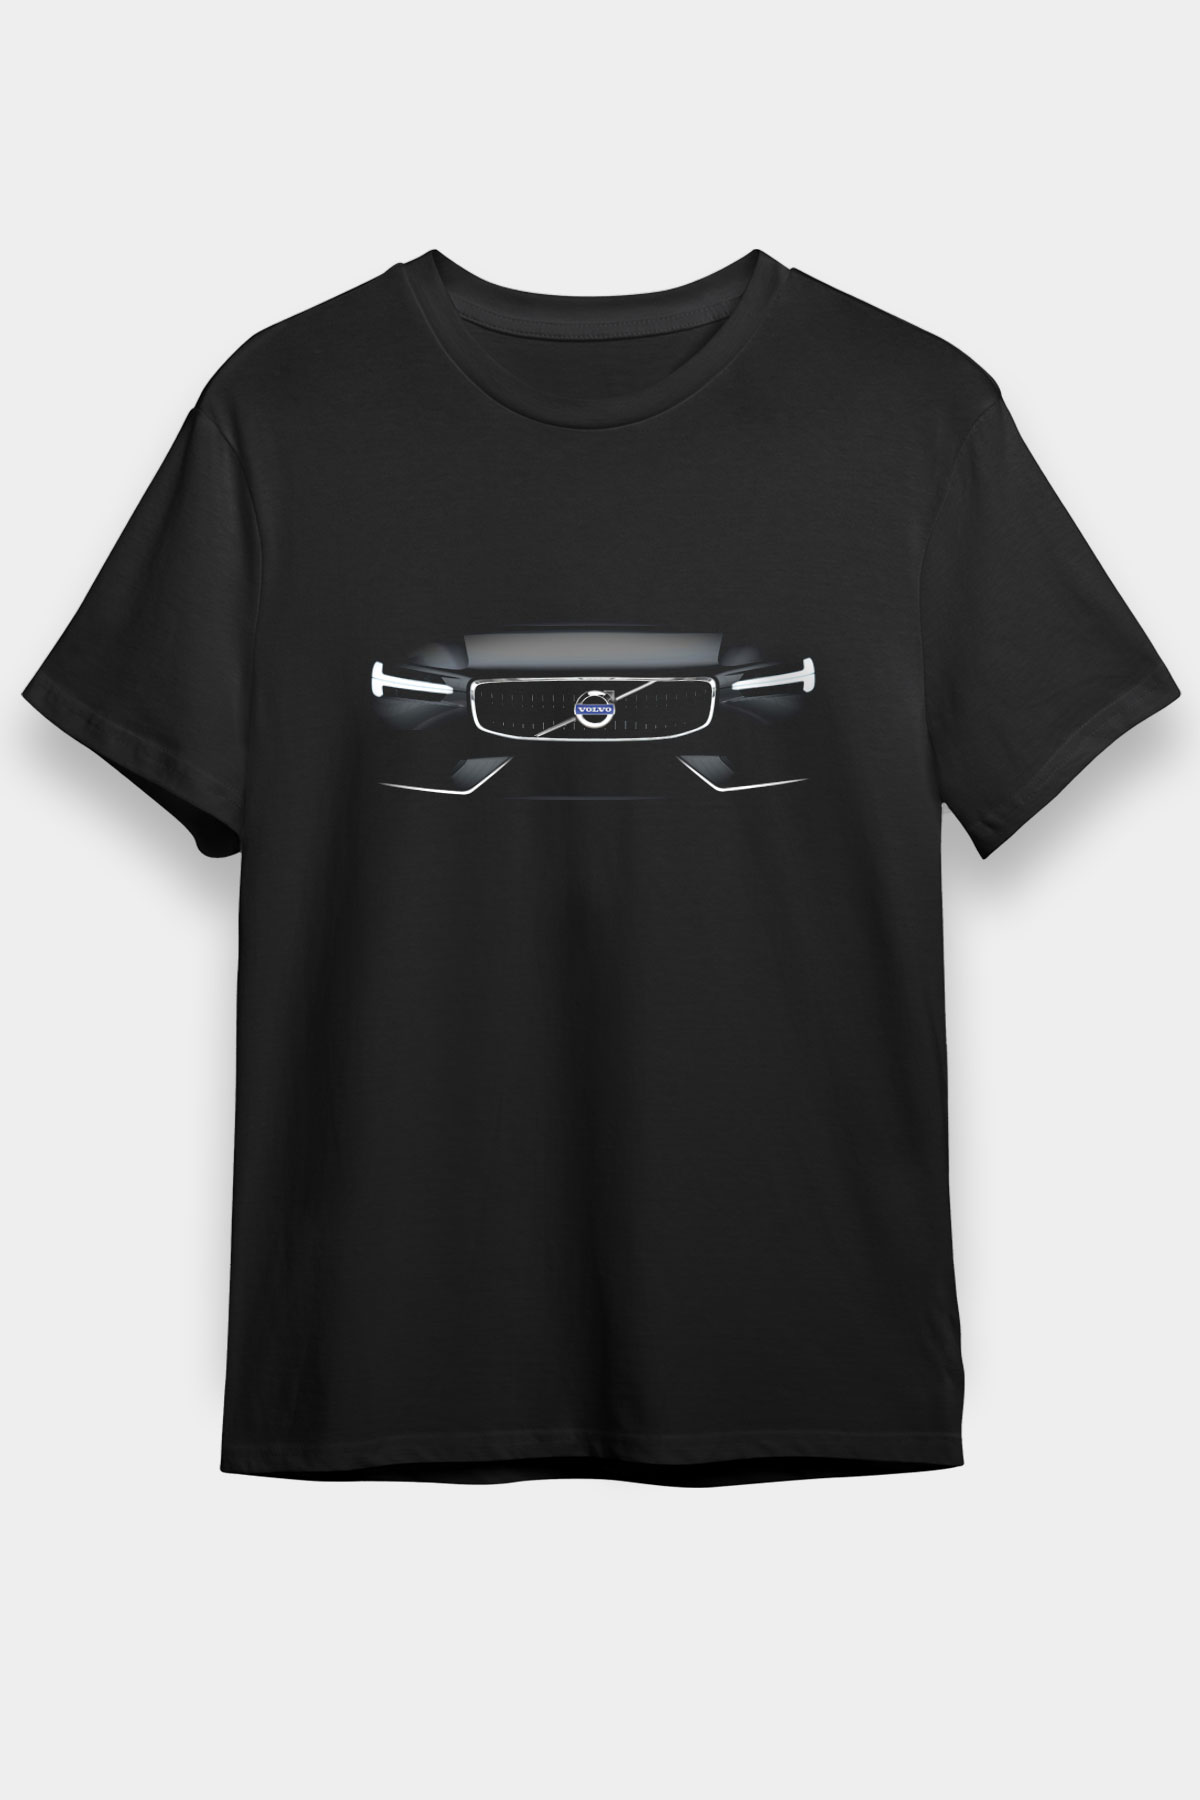 Volvo,Cars,Racing,Unisex,Tshirt 07